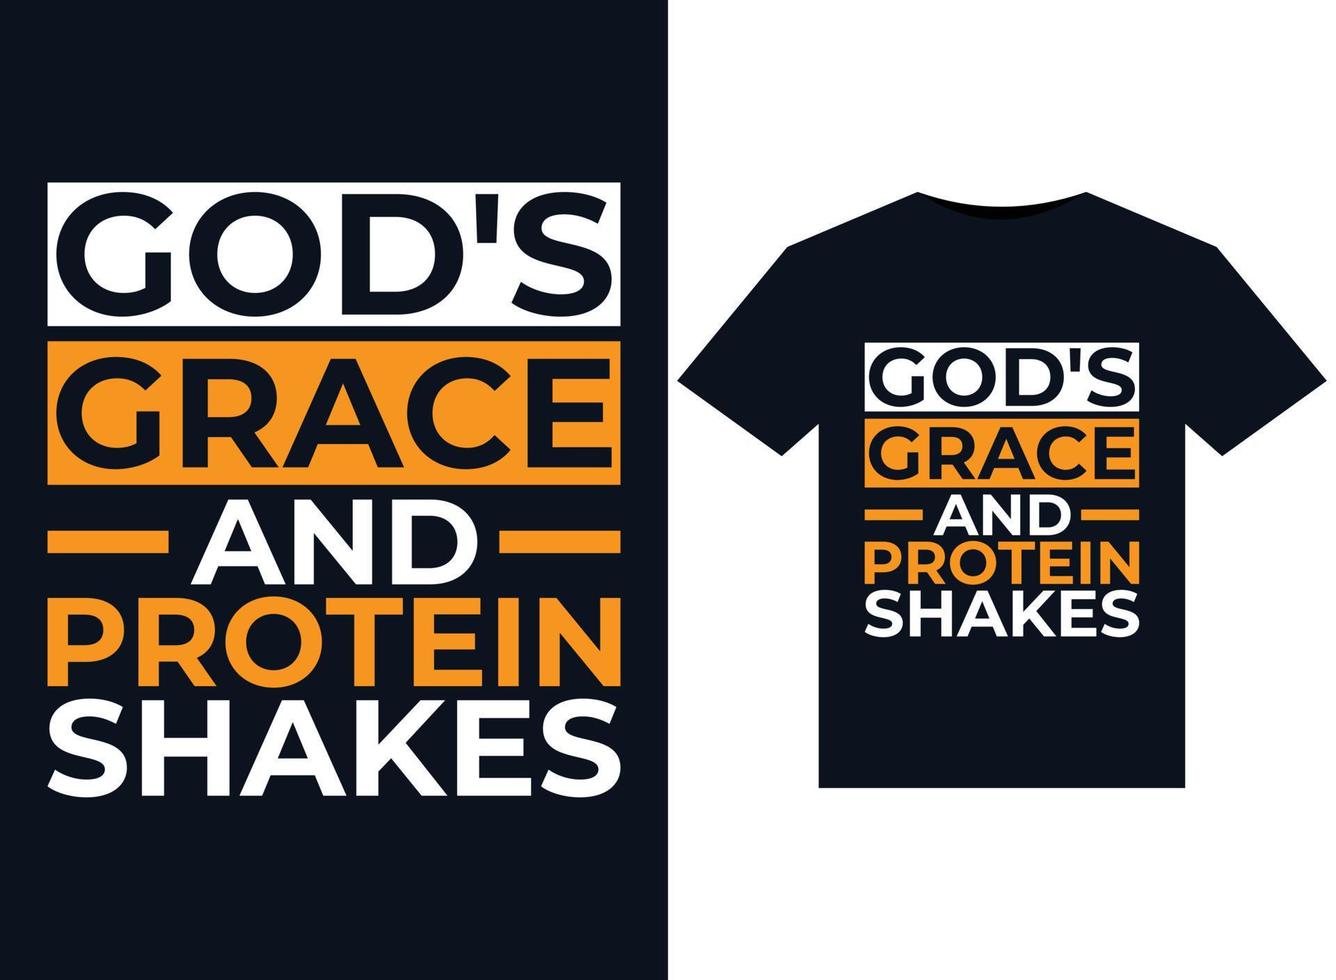 ilustrações de shakes de proteína e graça de deus para design de camisetas prontas para impressão vetor